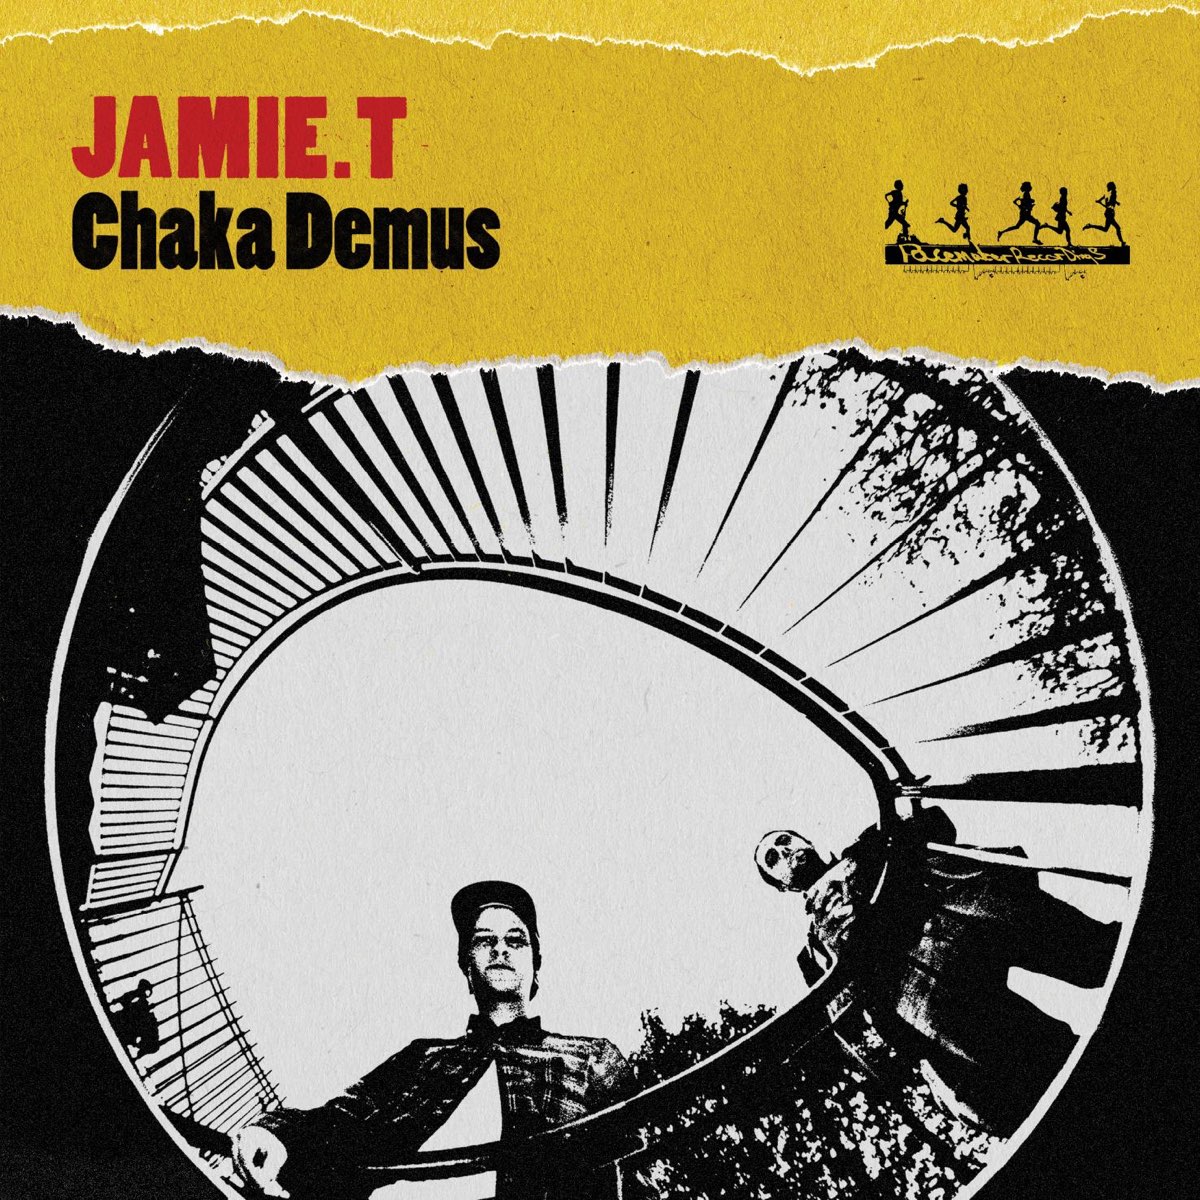 Jamie T Chaka Demus cover artwork